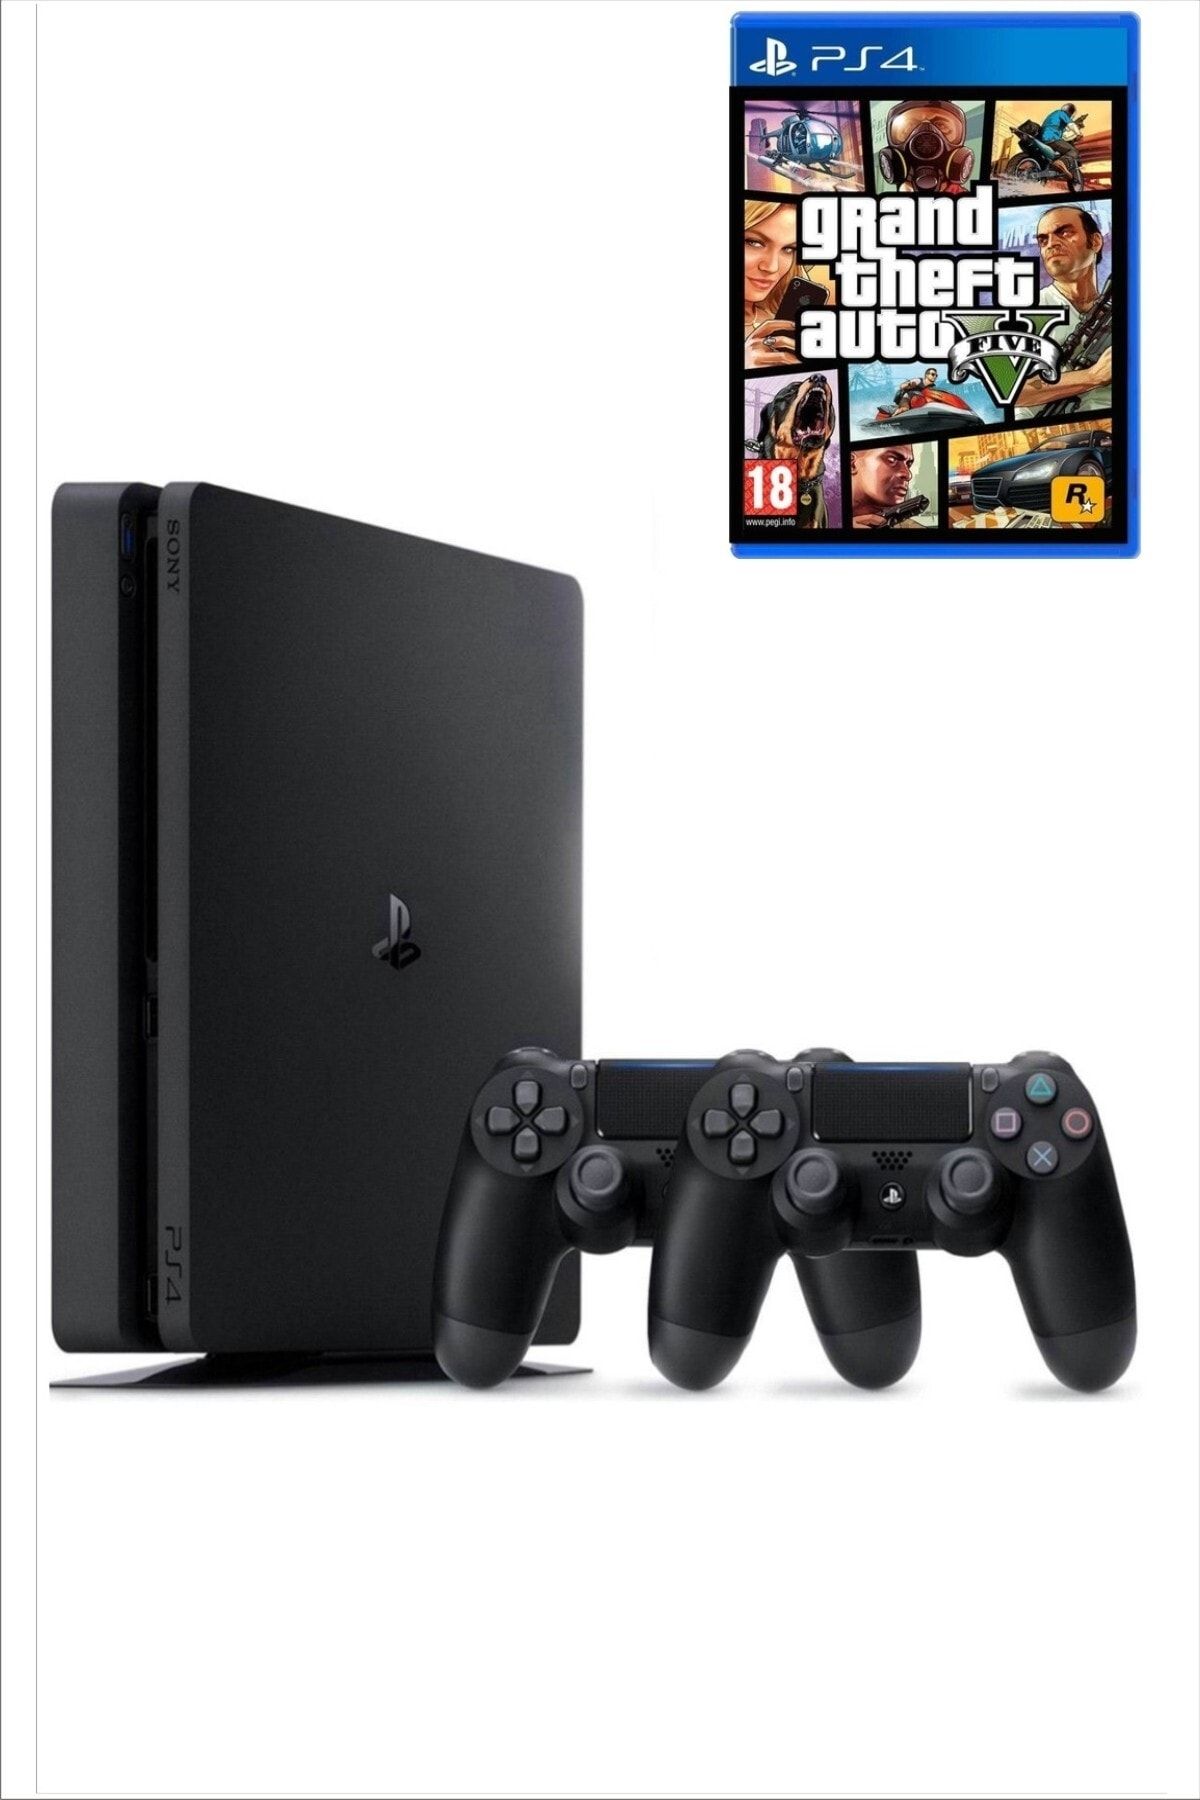 Sony Playstation 4 Slim Kasa 500 Gb +( Yenilenmiş. )+ 2. Ps4 Kol + Gta 5 Dahil 15 Dijital Oyun Hediyeli